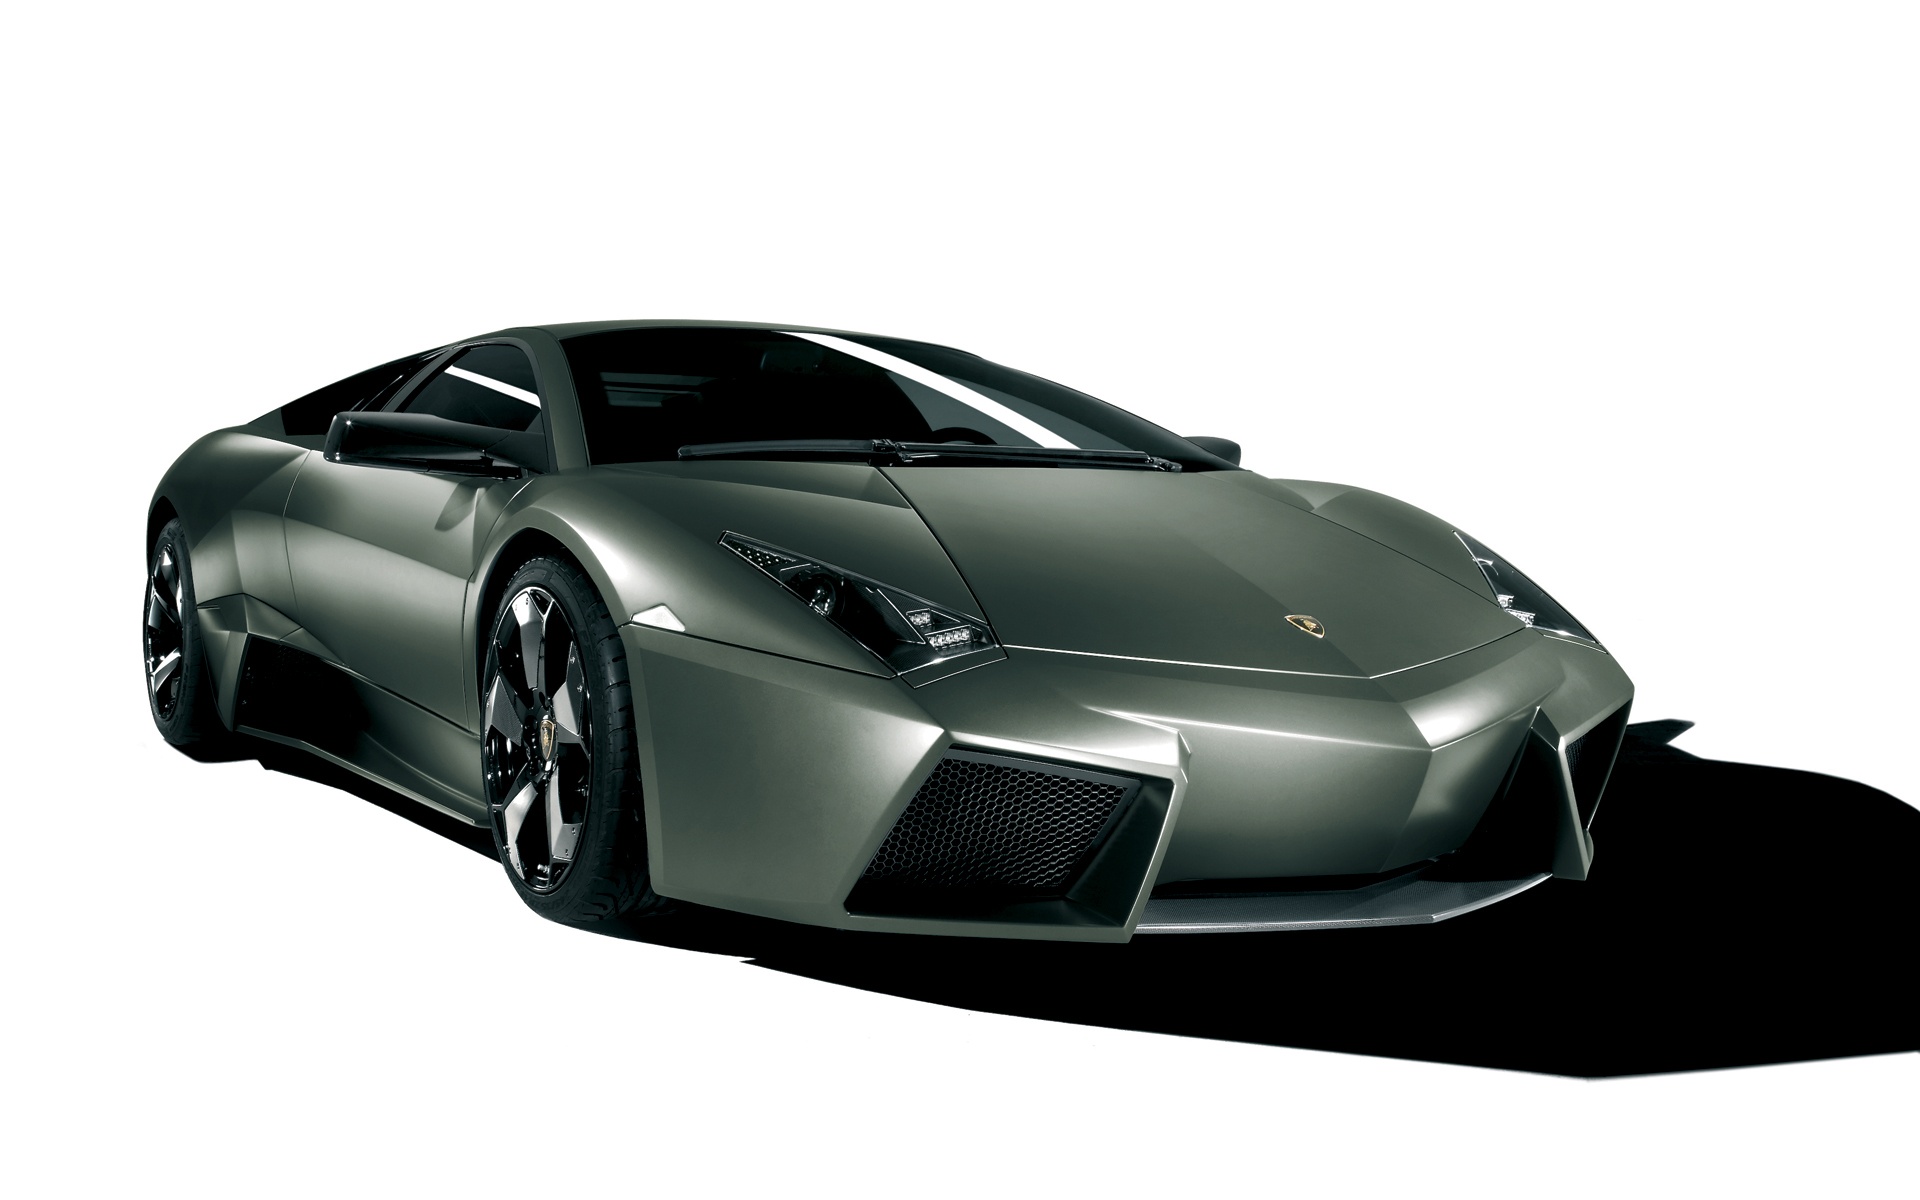 Lamborghini Reventon HD download for free